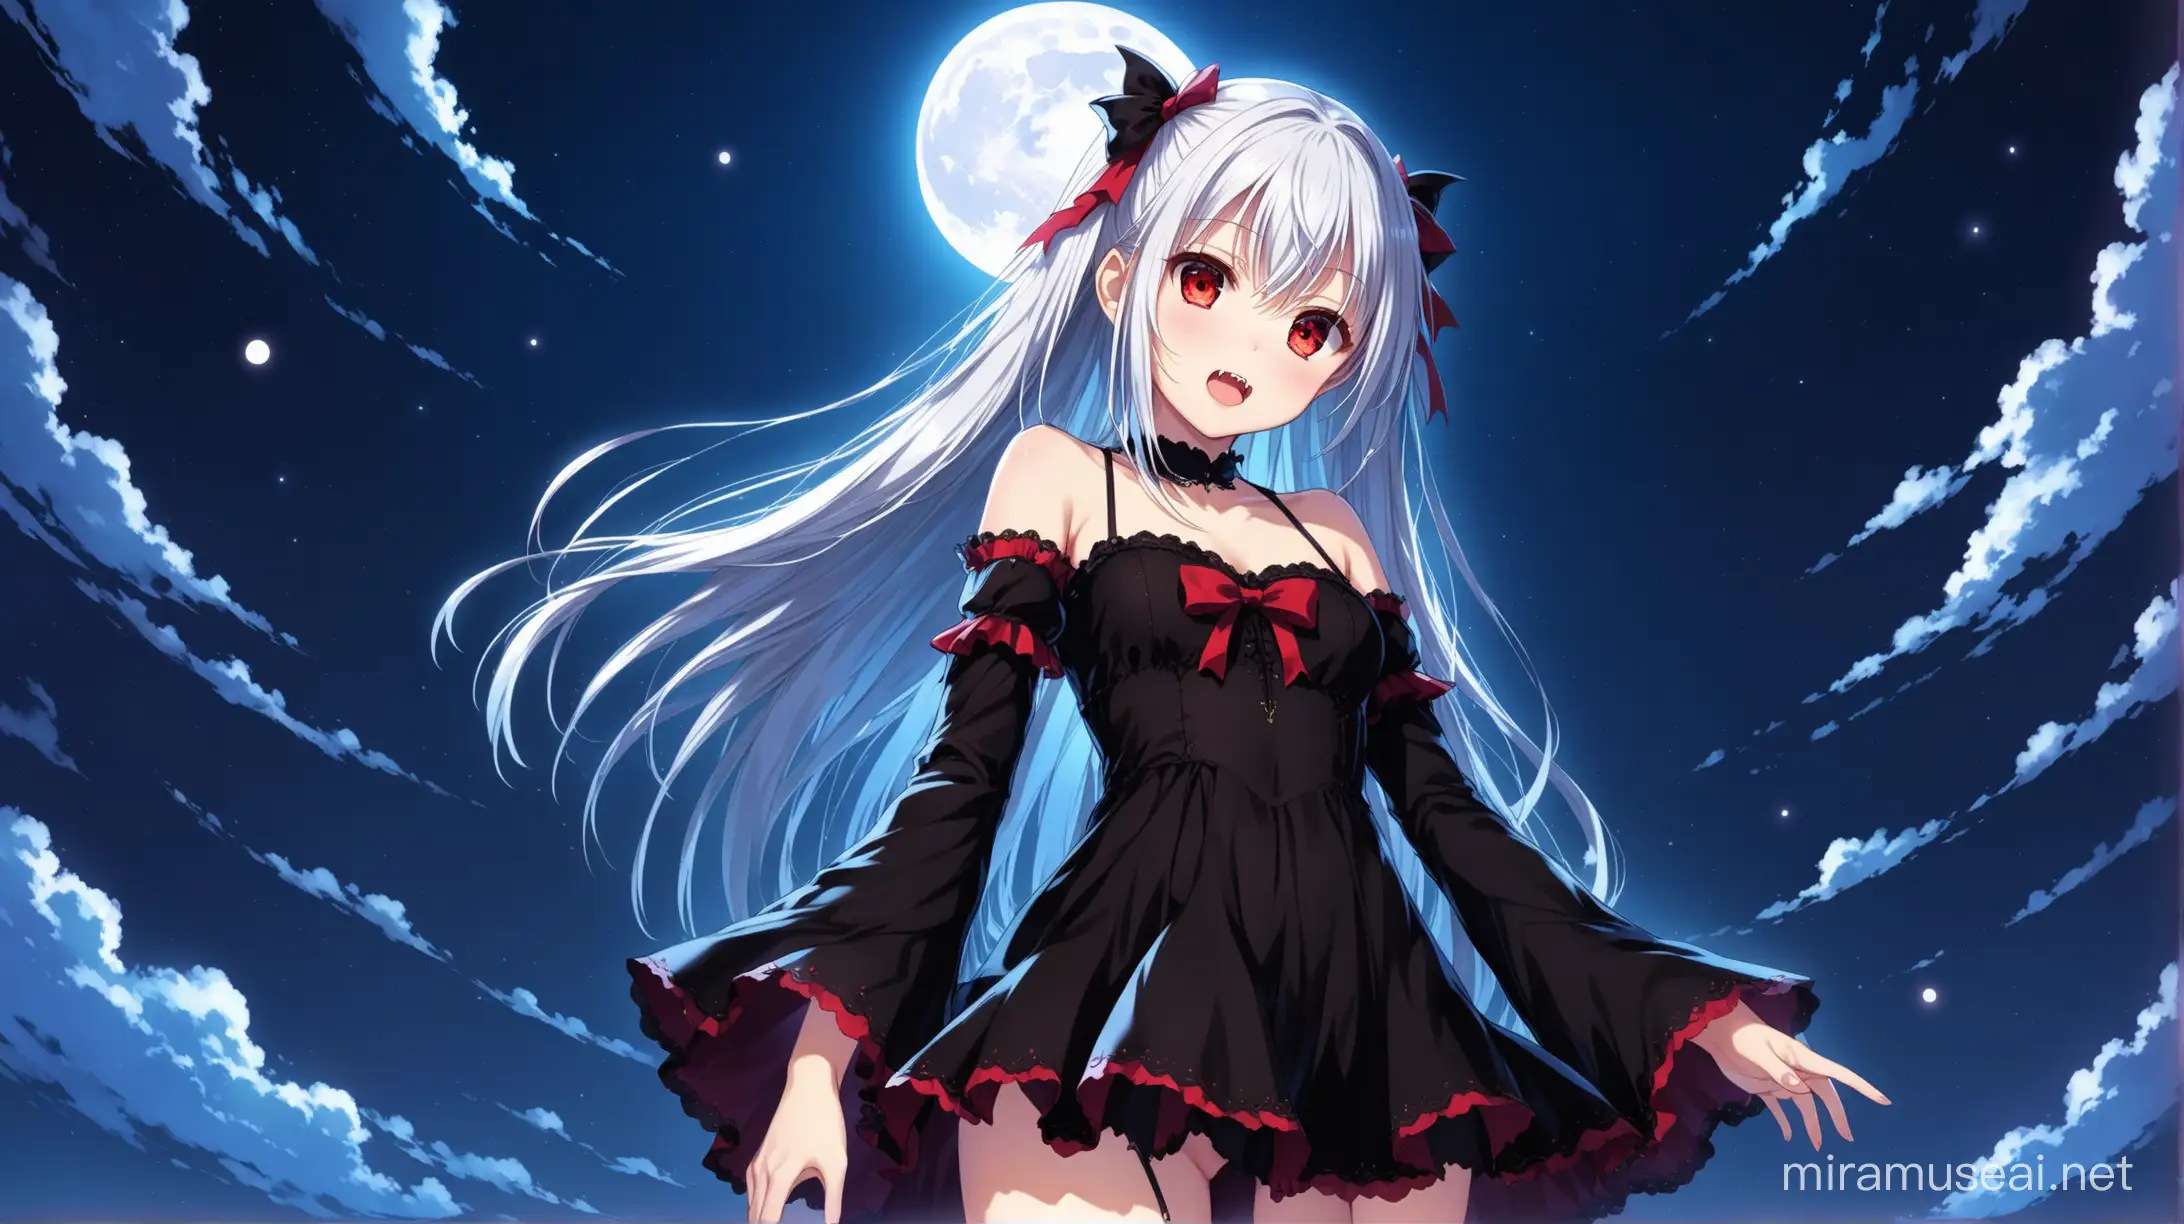 Elegant Vampire Girl Under Moonlight